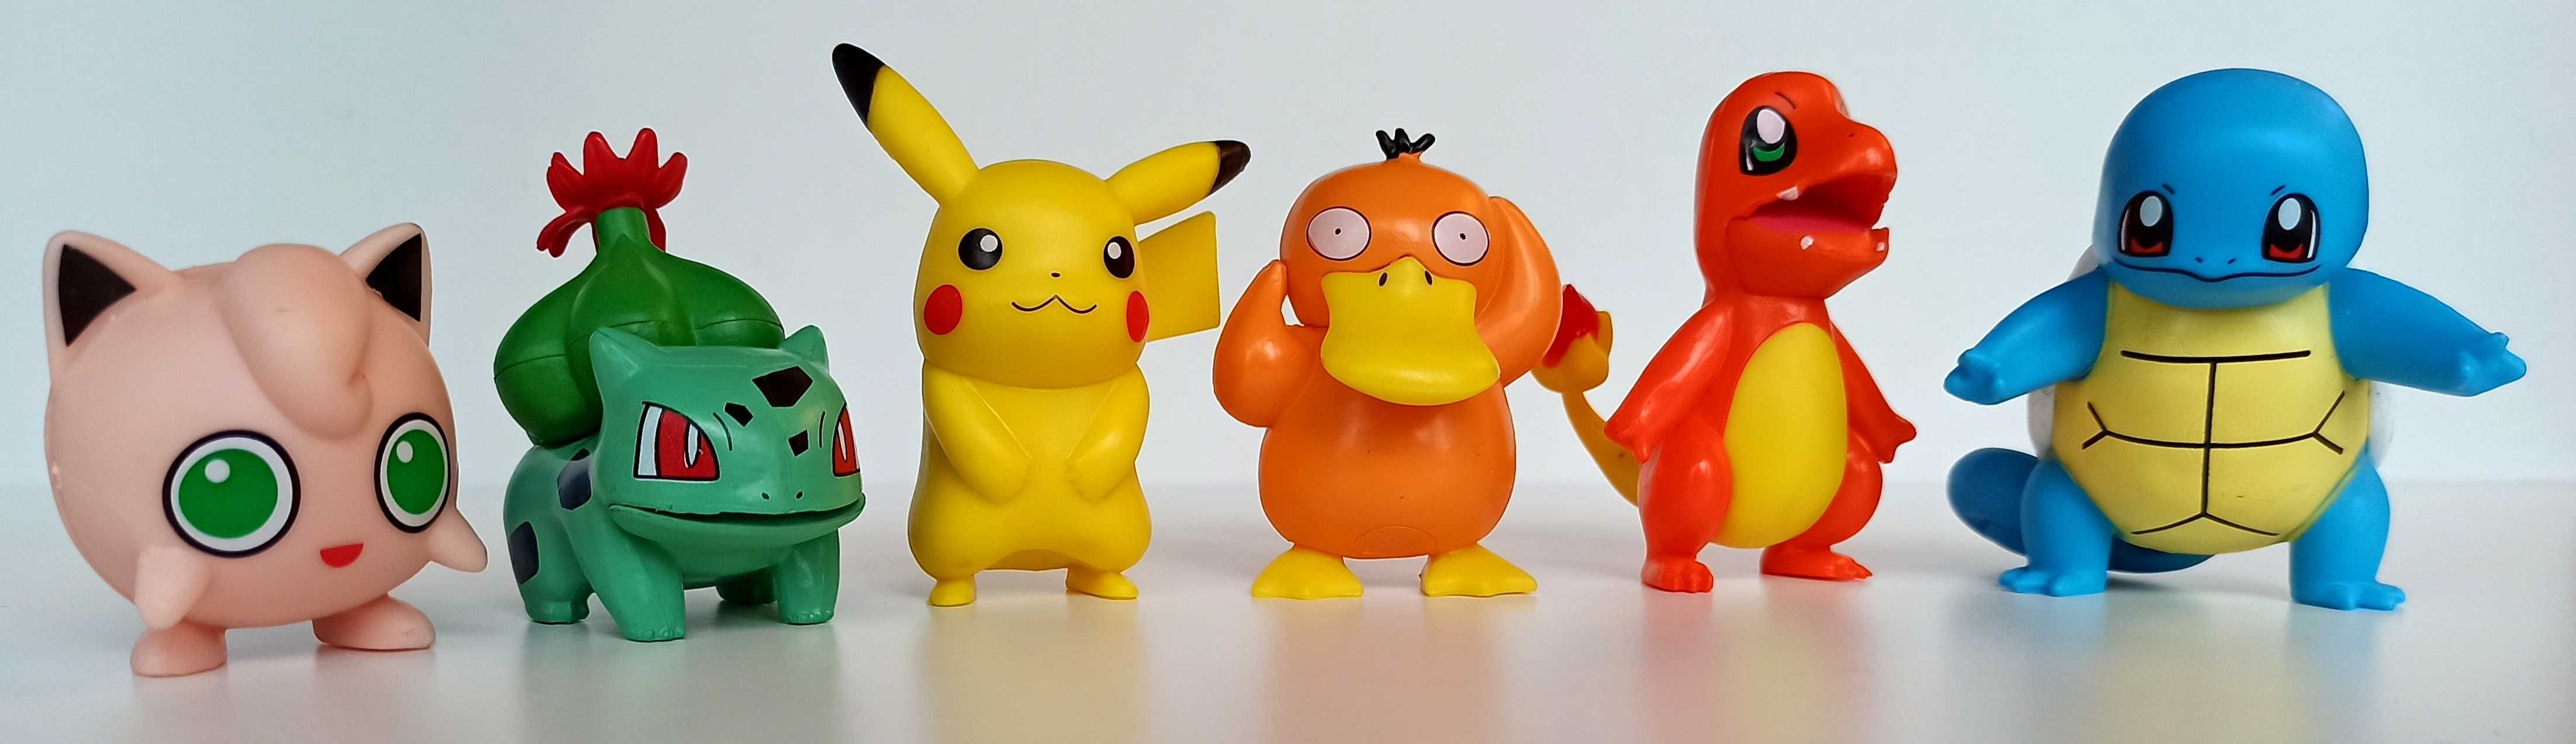 Nowe 6 szt figurki pokemony charmander eevee pikachu squirtle pokemon